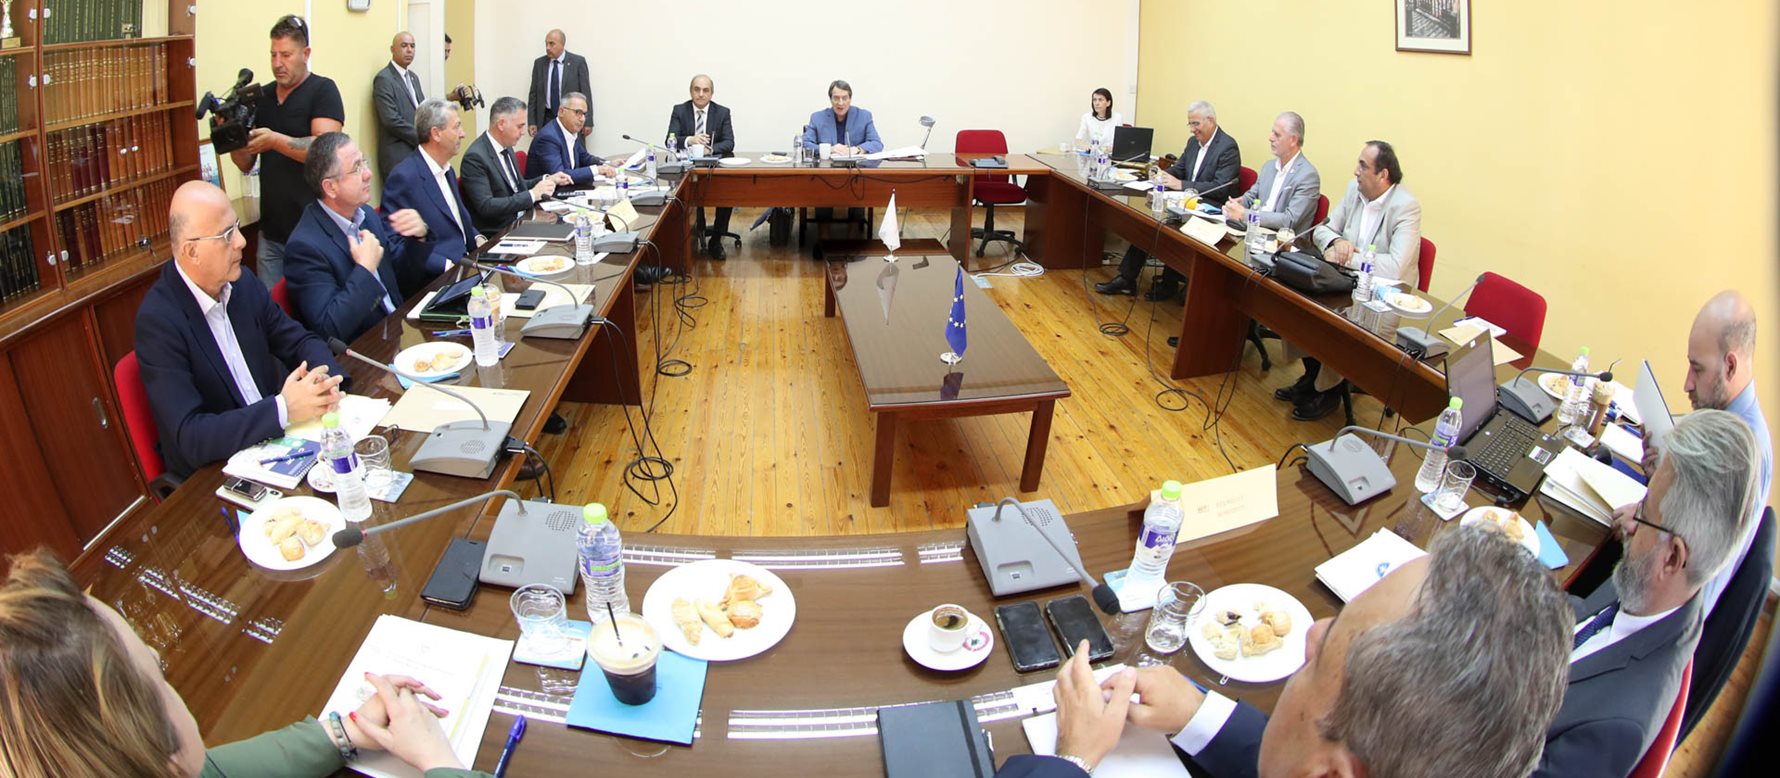 Ομόφωνο «όχι» του συμβουλίου αρχηγών της Κύπρου στη δημιουργία κοινής επιτροπής διαχείρισης των υδρογονανθράκων